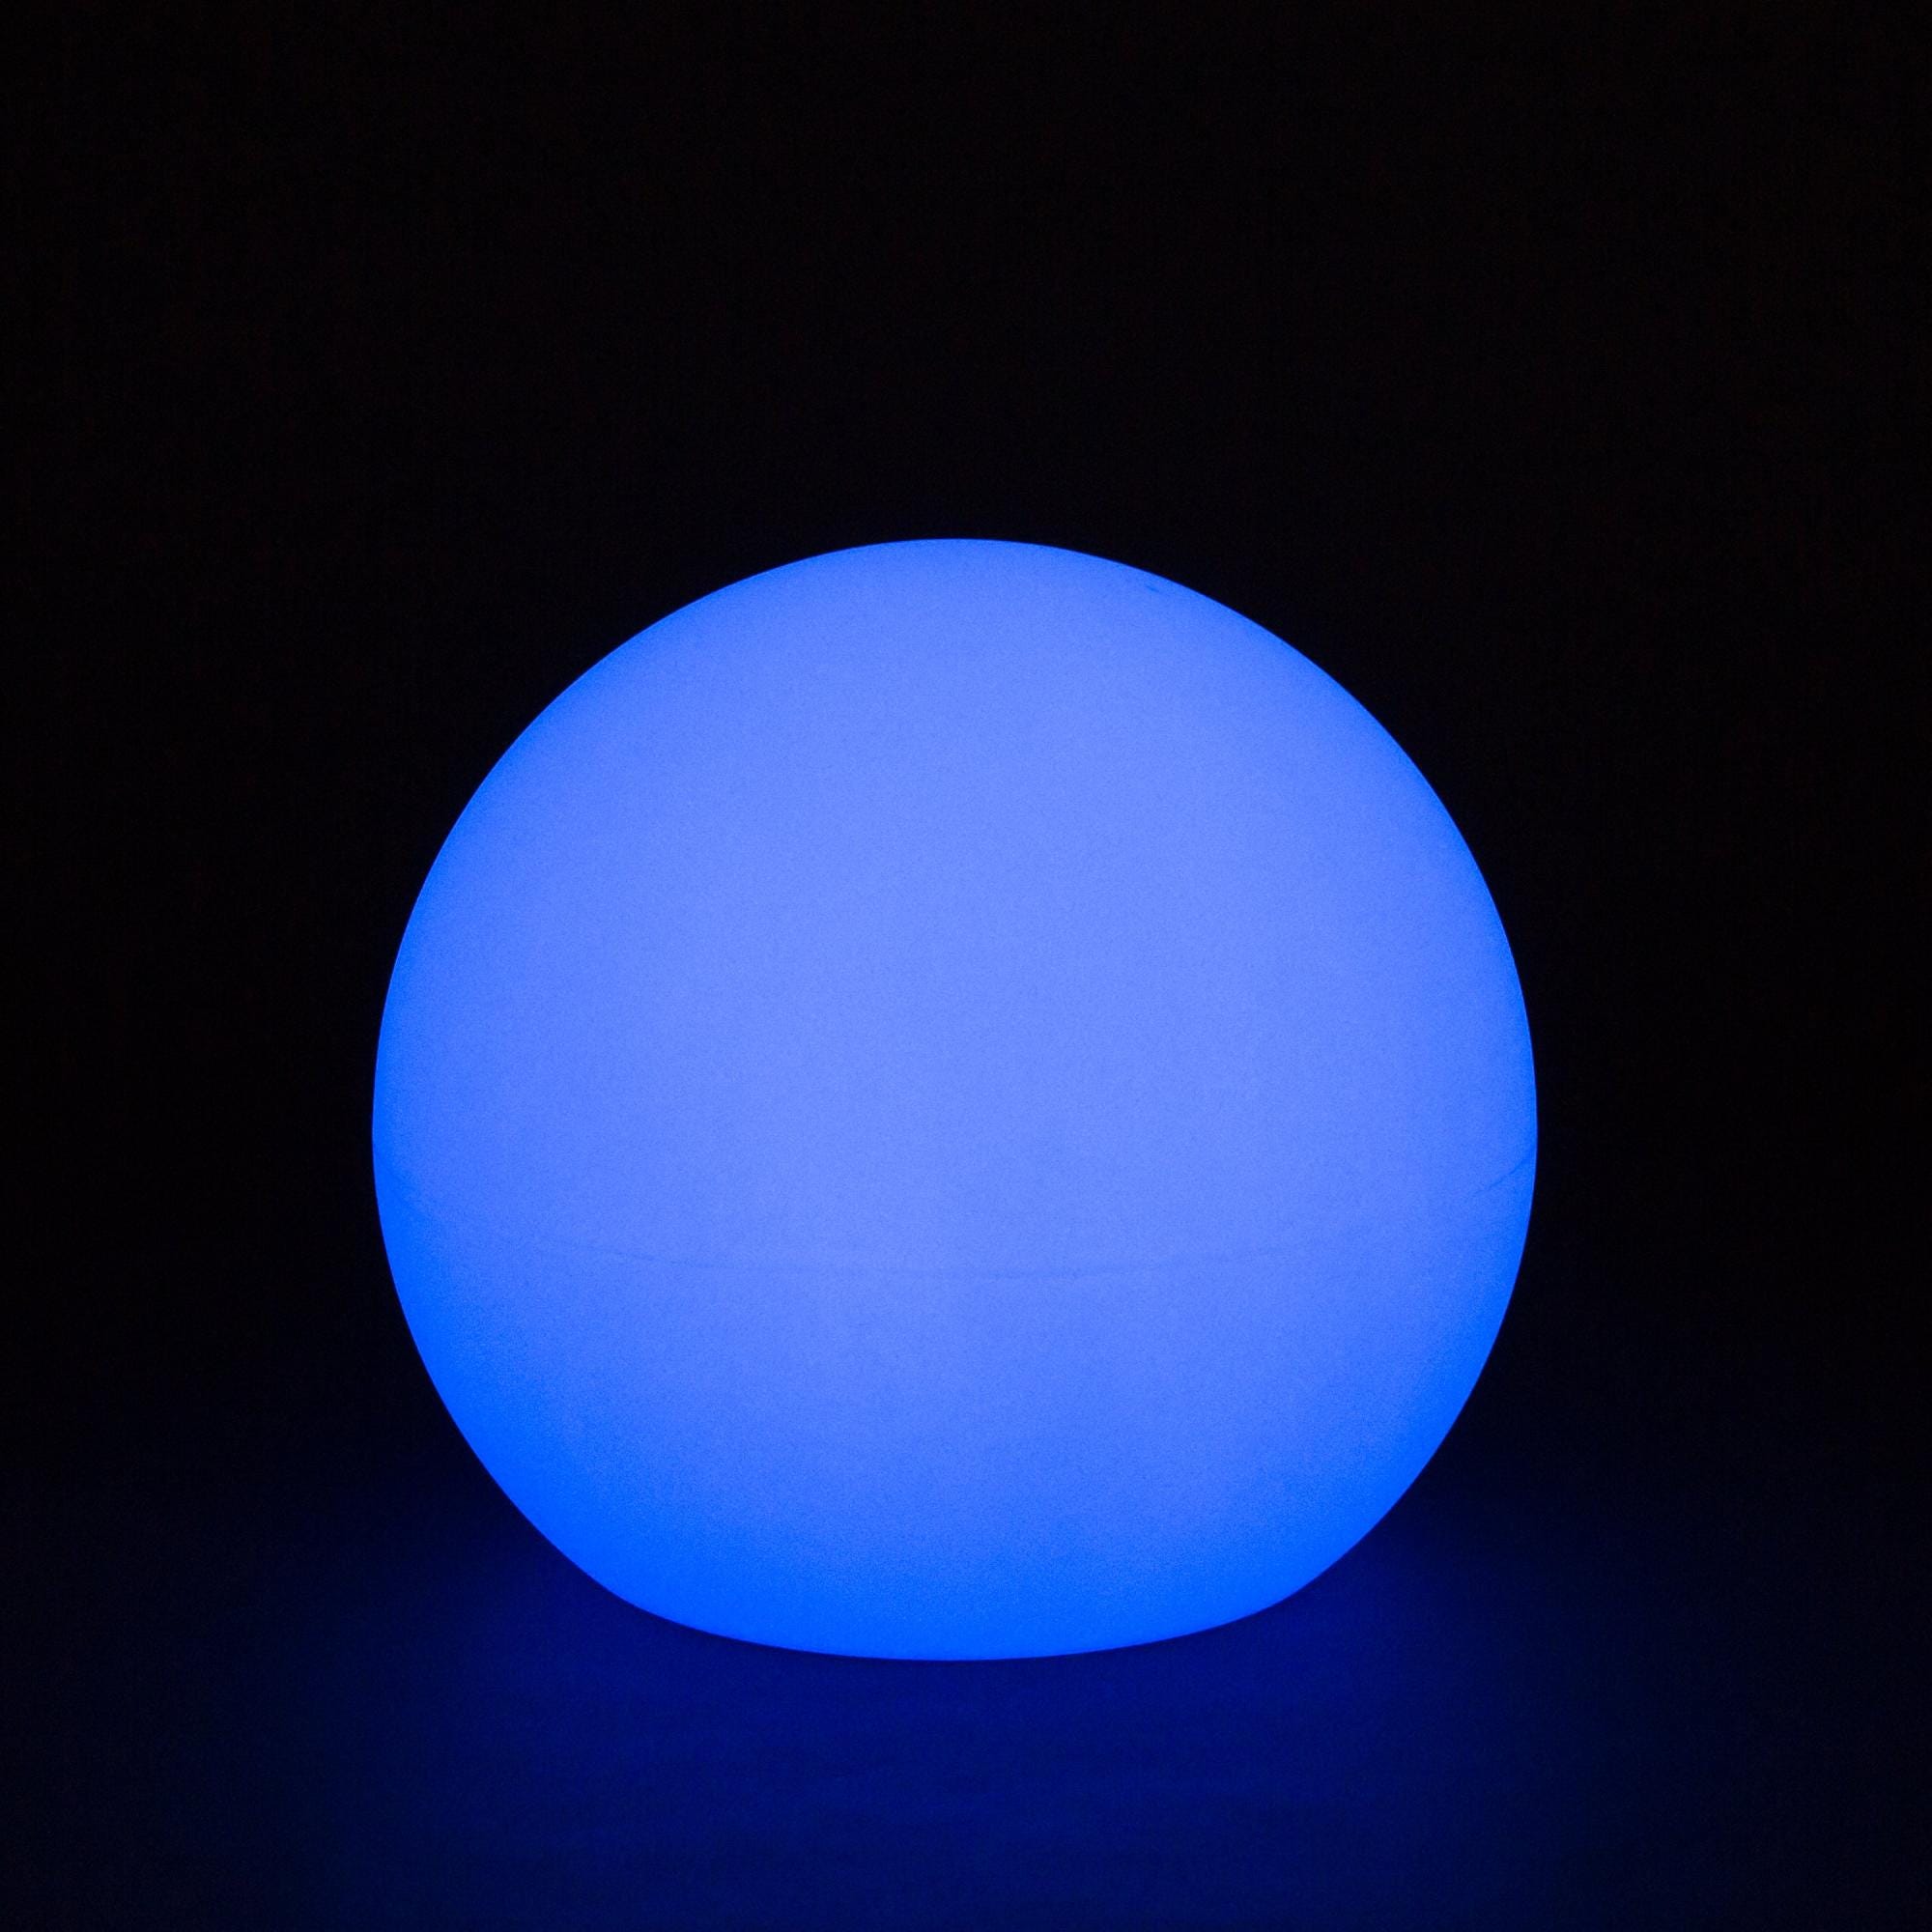 Boule lumineuse extérieure buly 40 cm (alimentation électrique)